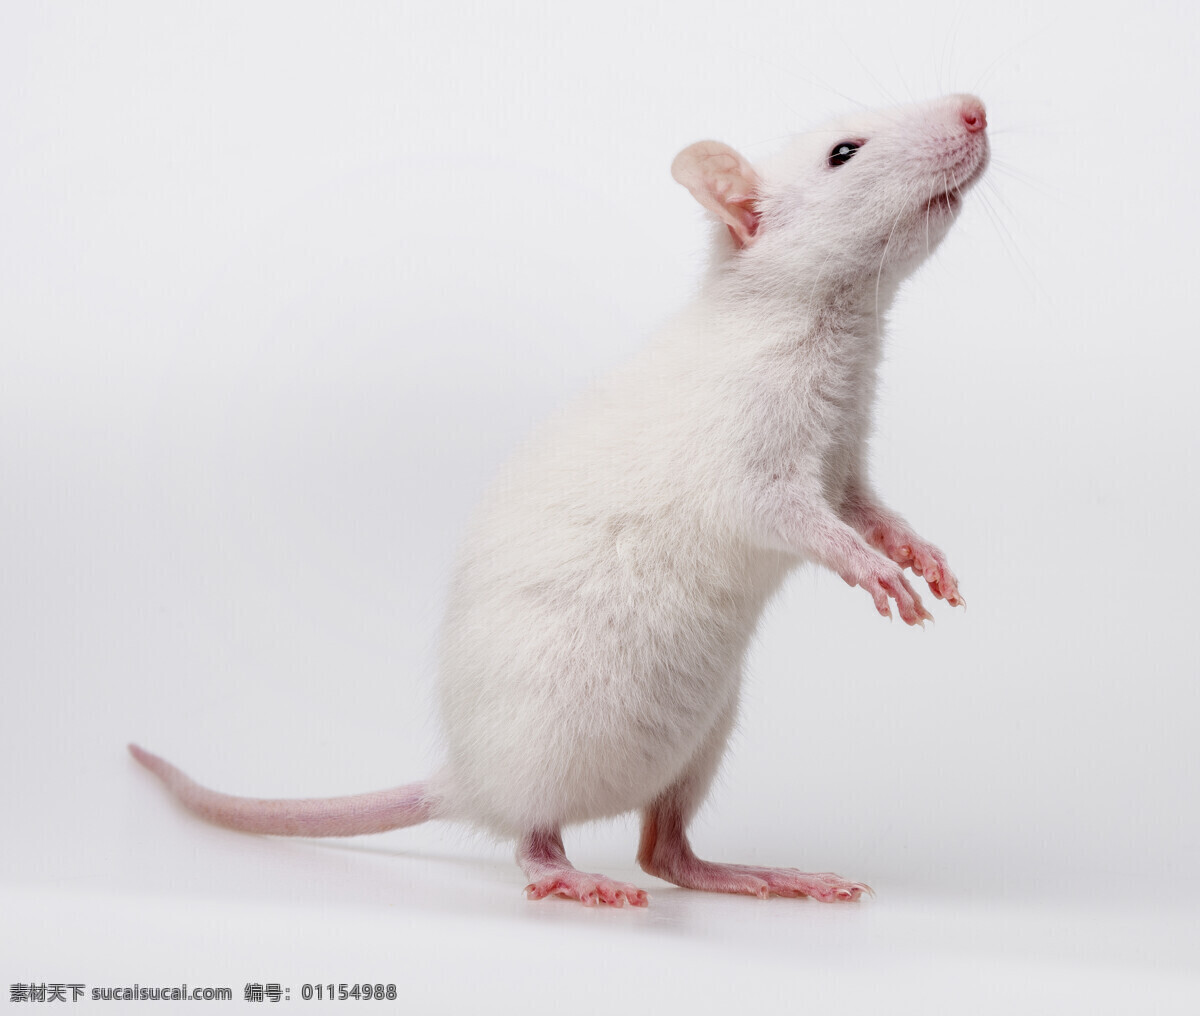 高清小白鼠 小白鼠 小白鼠写真 小白鼠摄影 小白鼠特写 科学小白鼠 实验小白鼠 科学白鼠 试验小白鼠 试验白鼠 白鼠摄影 白鼠写真 白鼠特写 老鼠 小老鼠 宠物鼠 鼠 生物世界 家禽家畜